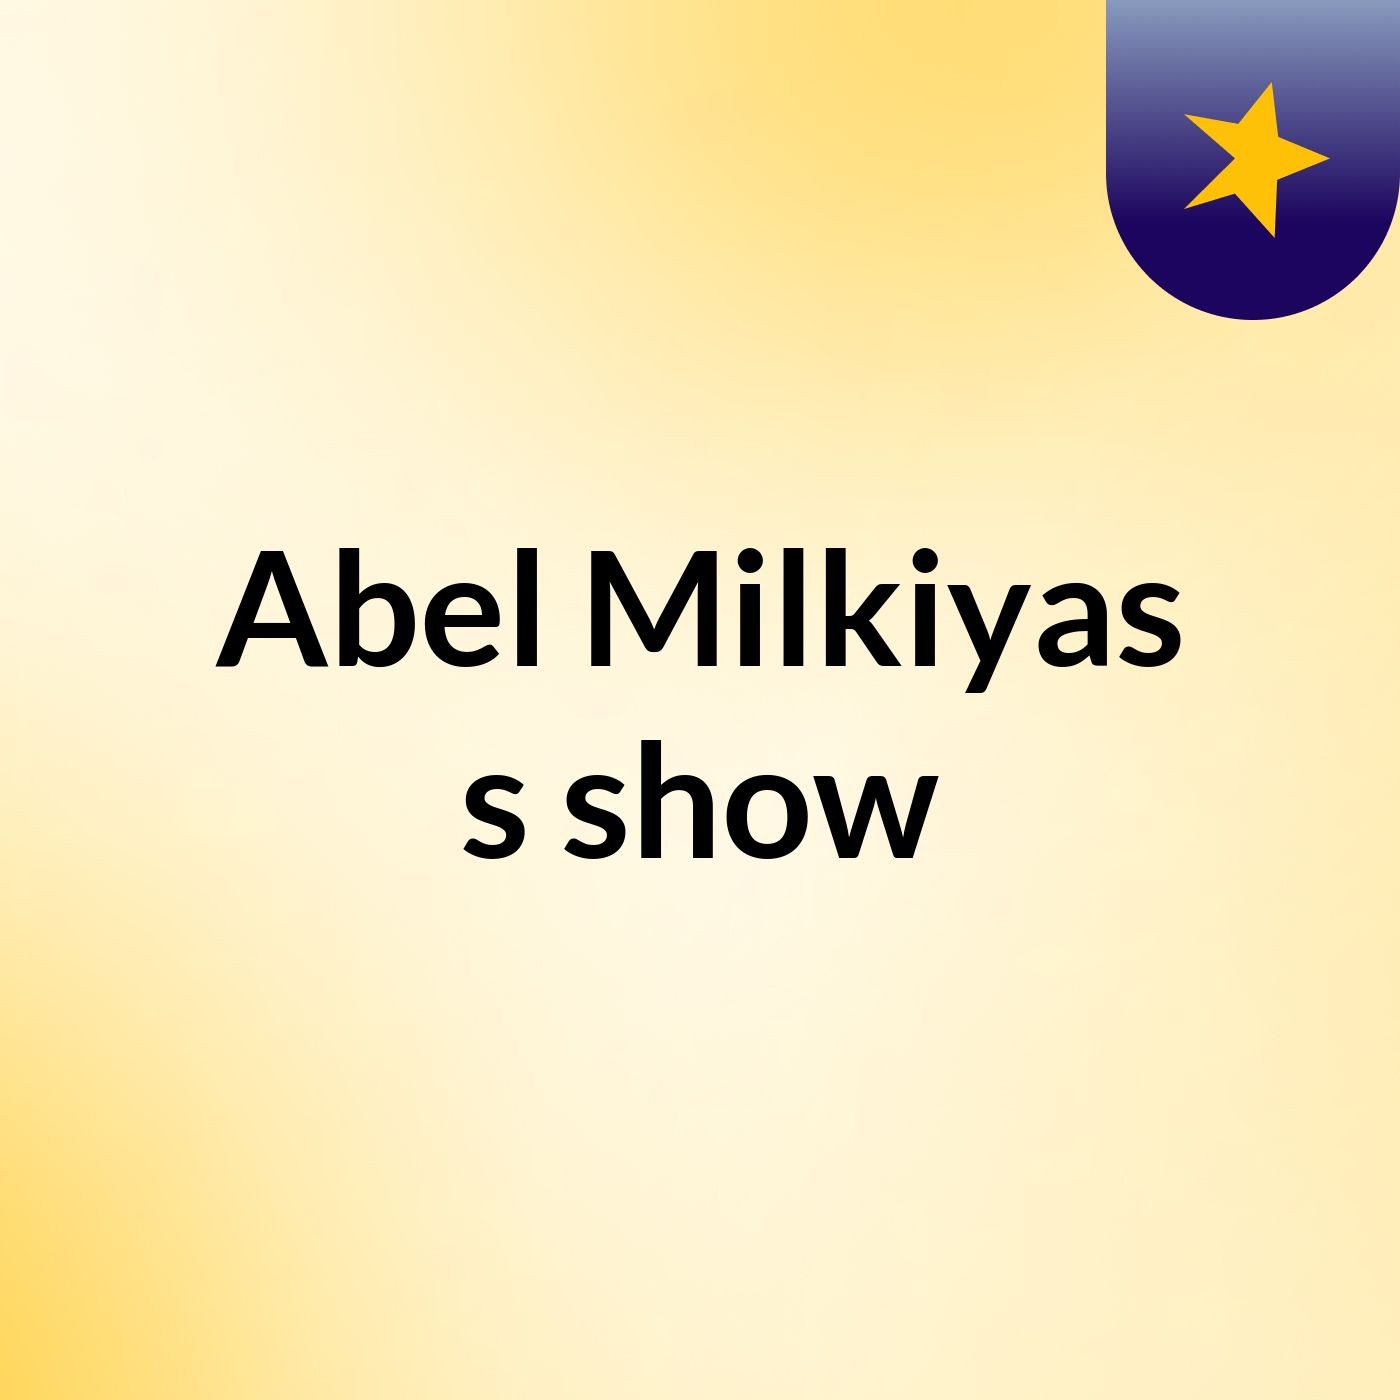 Episode 3 - Abel Milkiyas's show